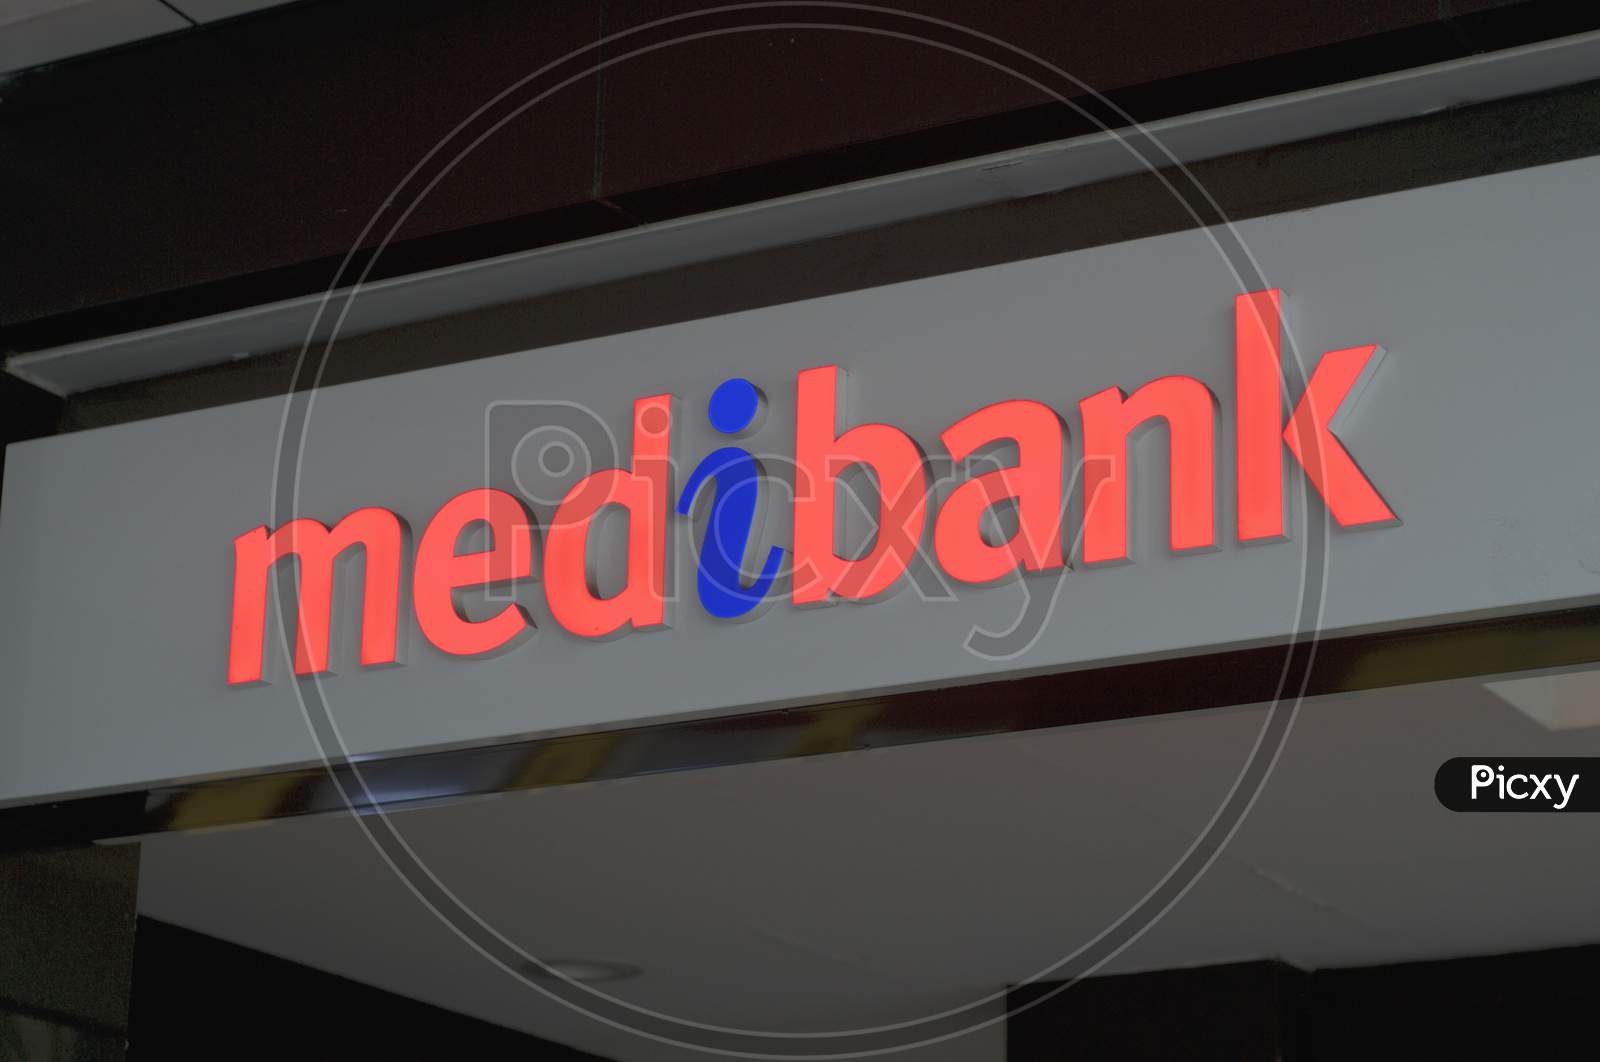 Medibank Sign In Brisbane